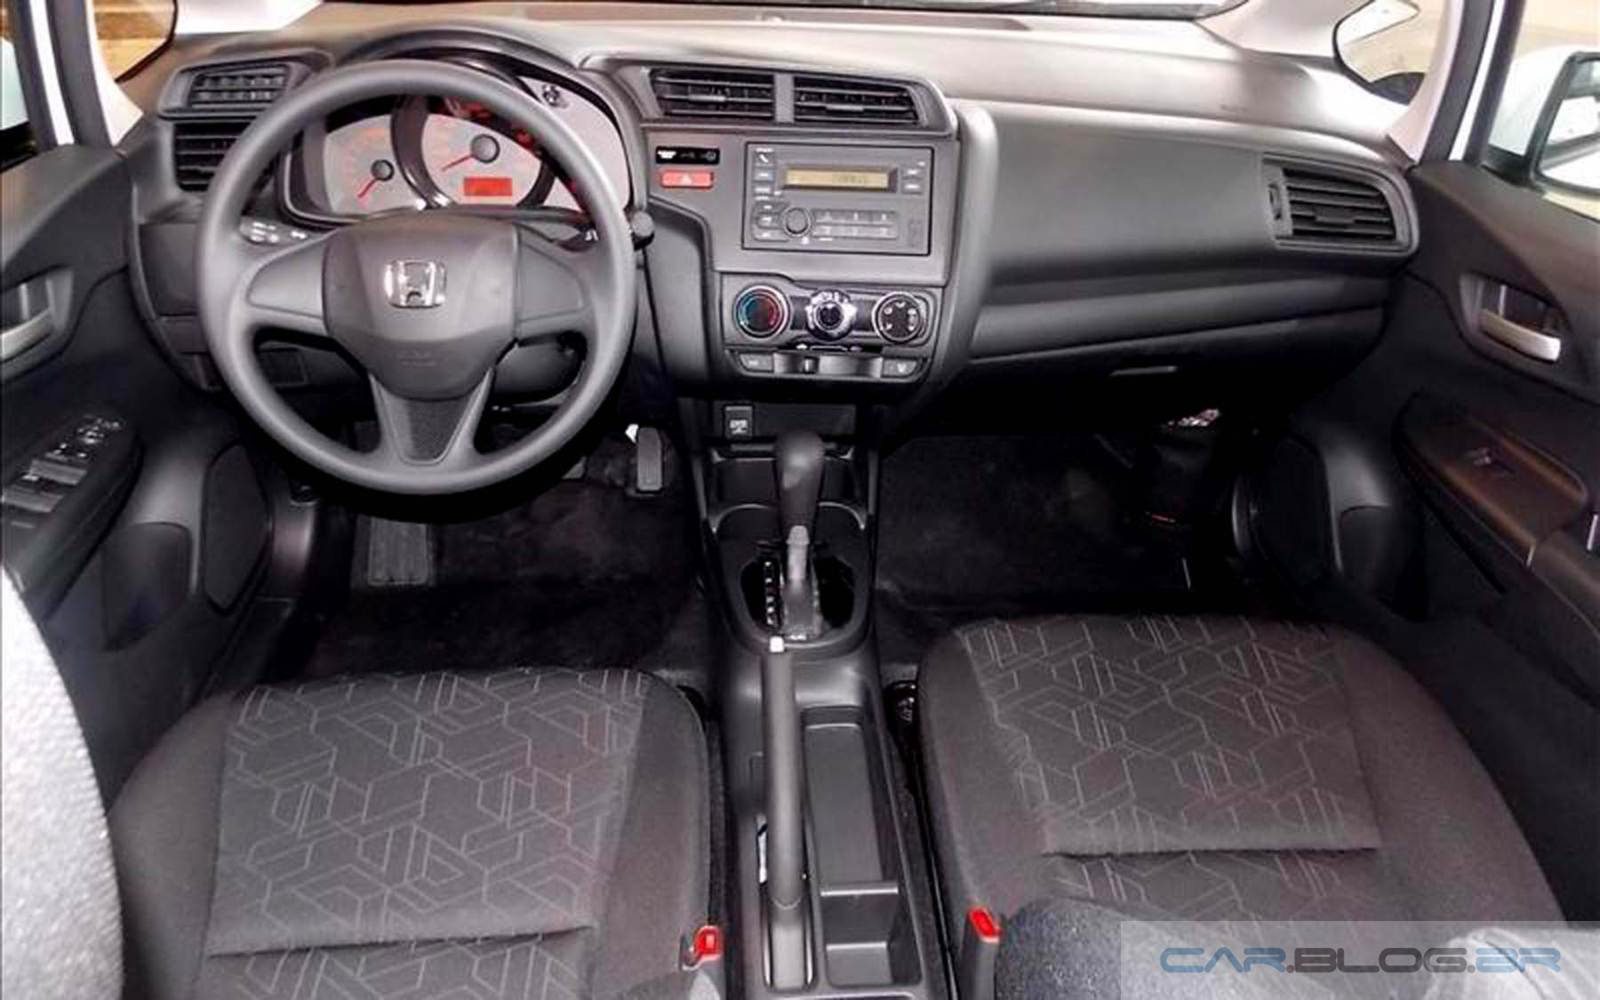 Honda Fit Lx Automatico 2015 Fotos Preco E Consumo Car